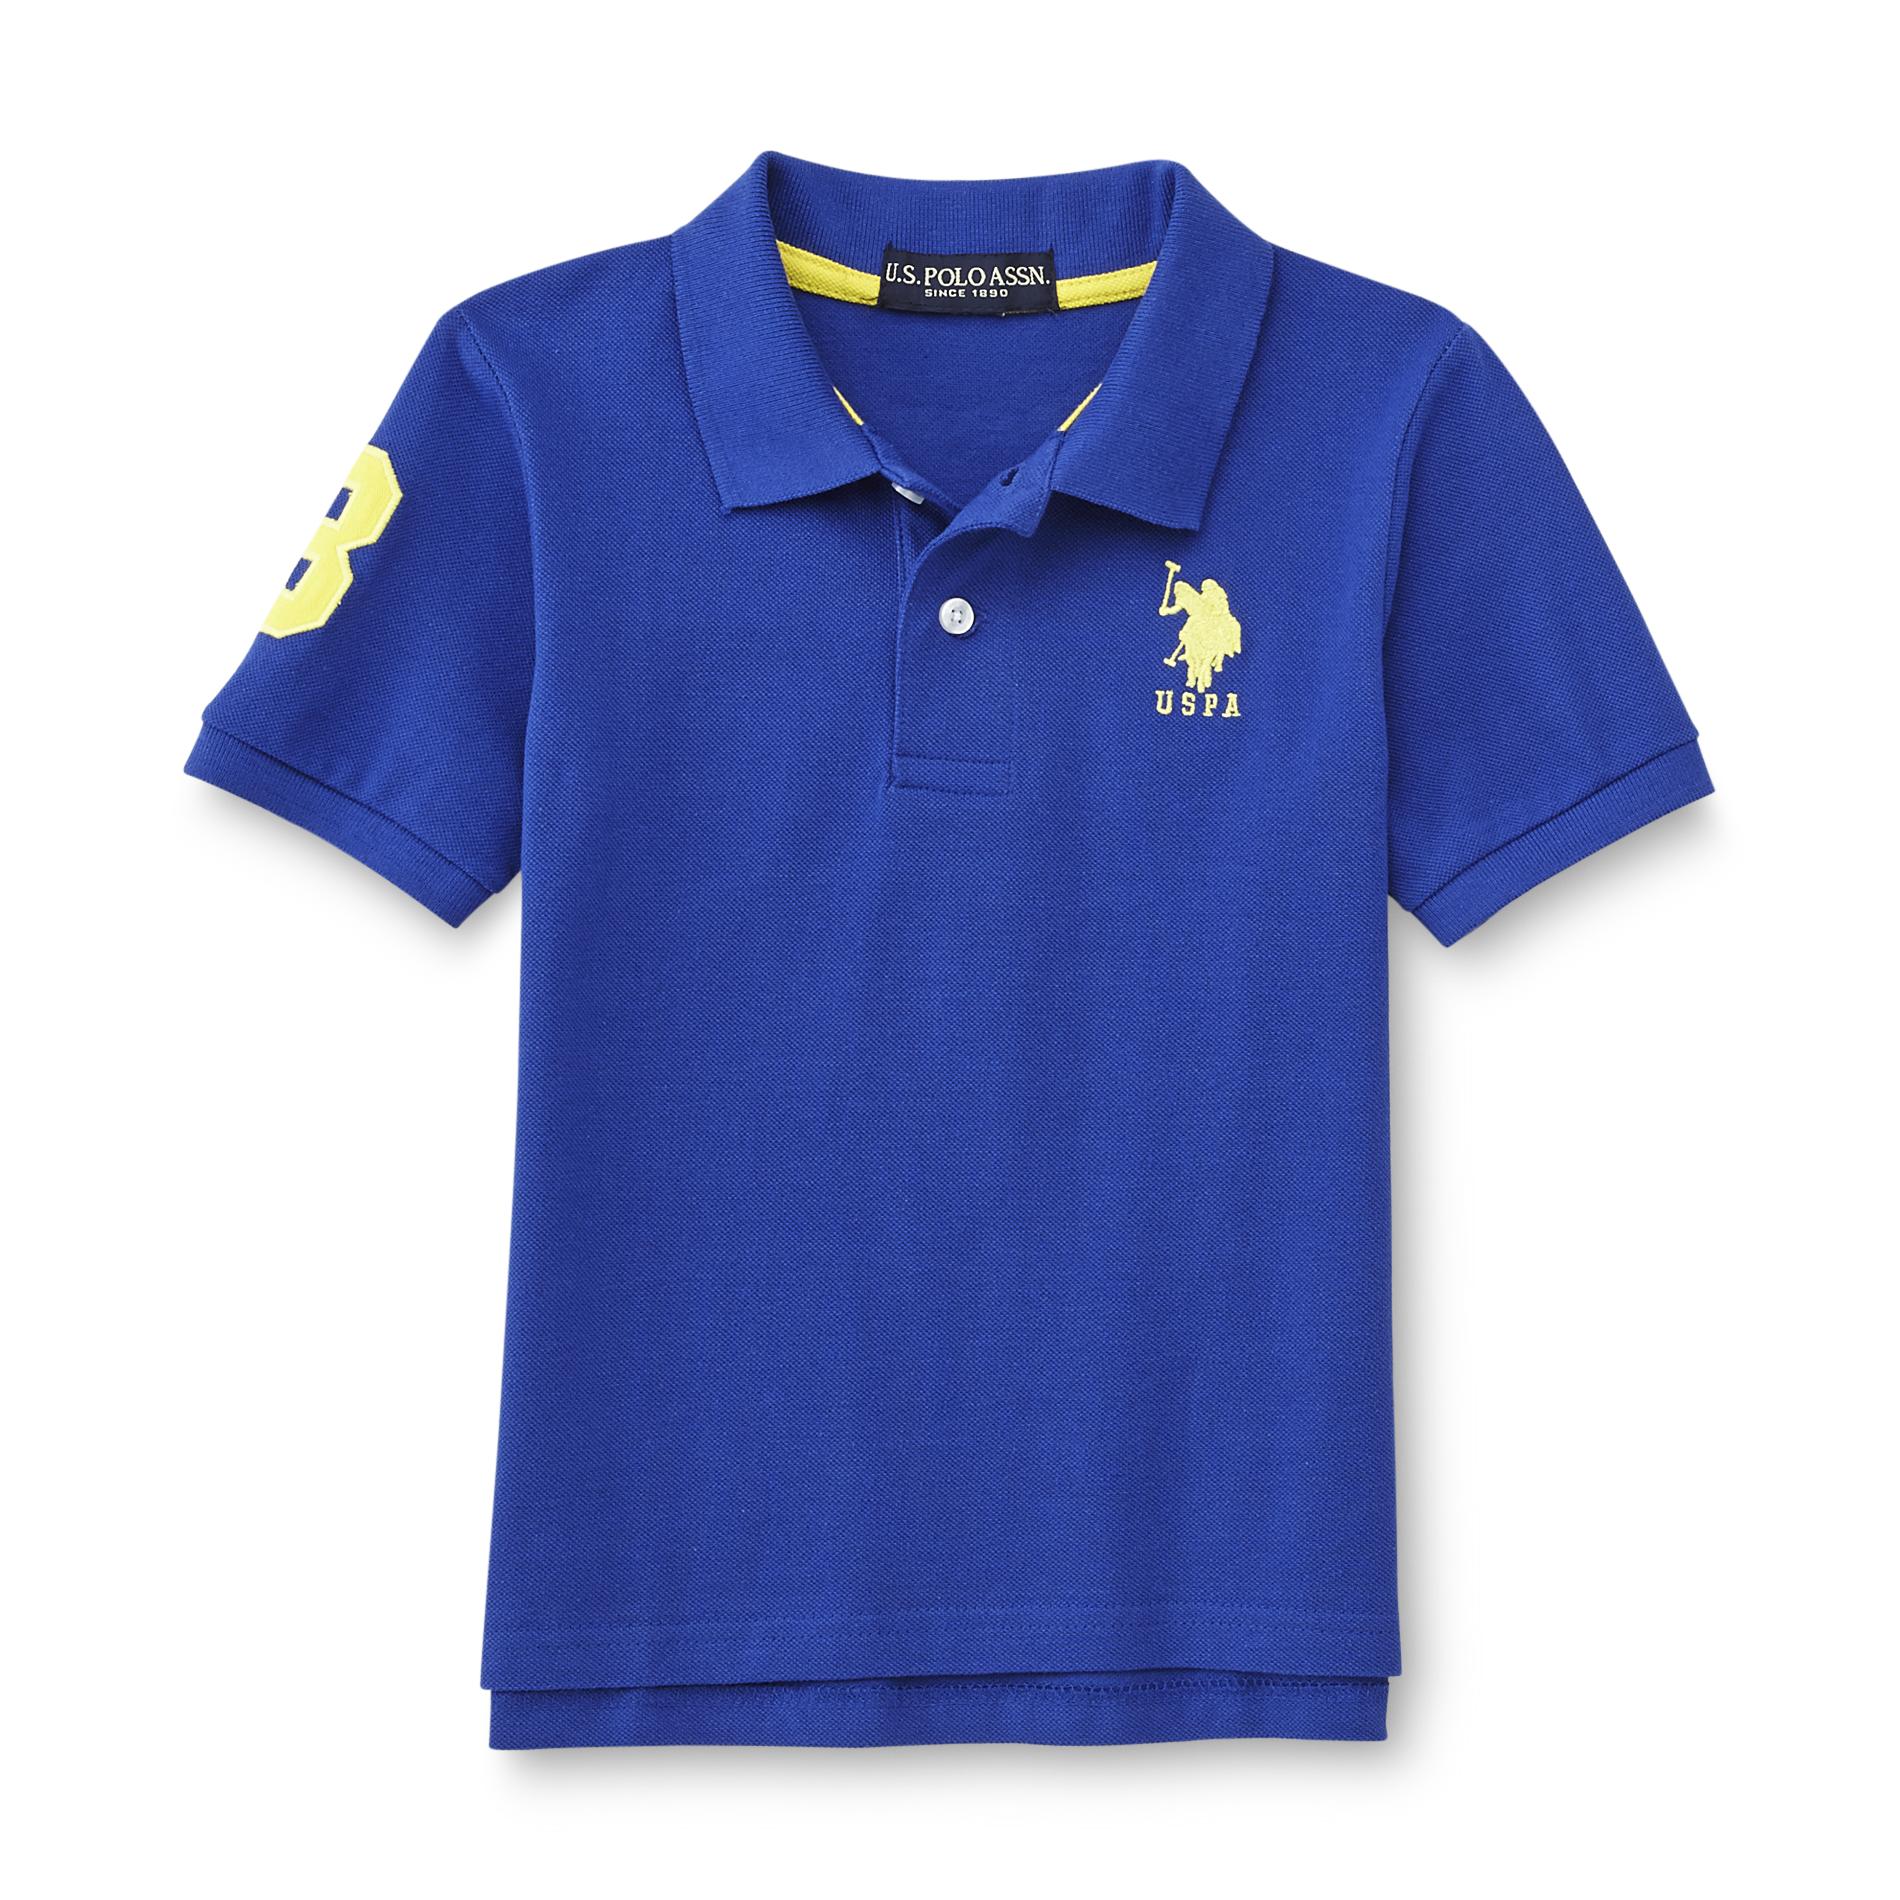 U.S. Polo Assn. Boy's Embroidered Polo Shirt